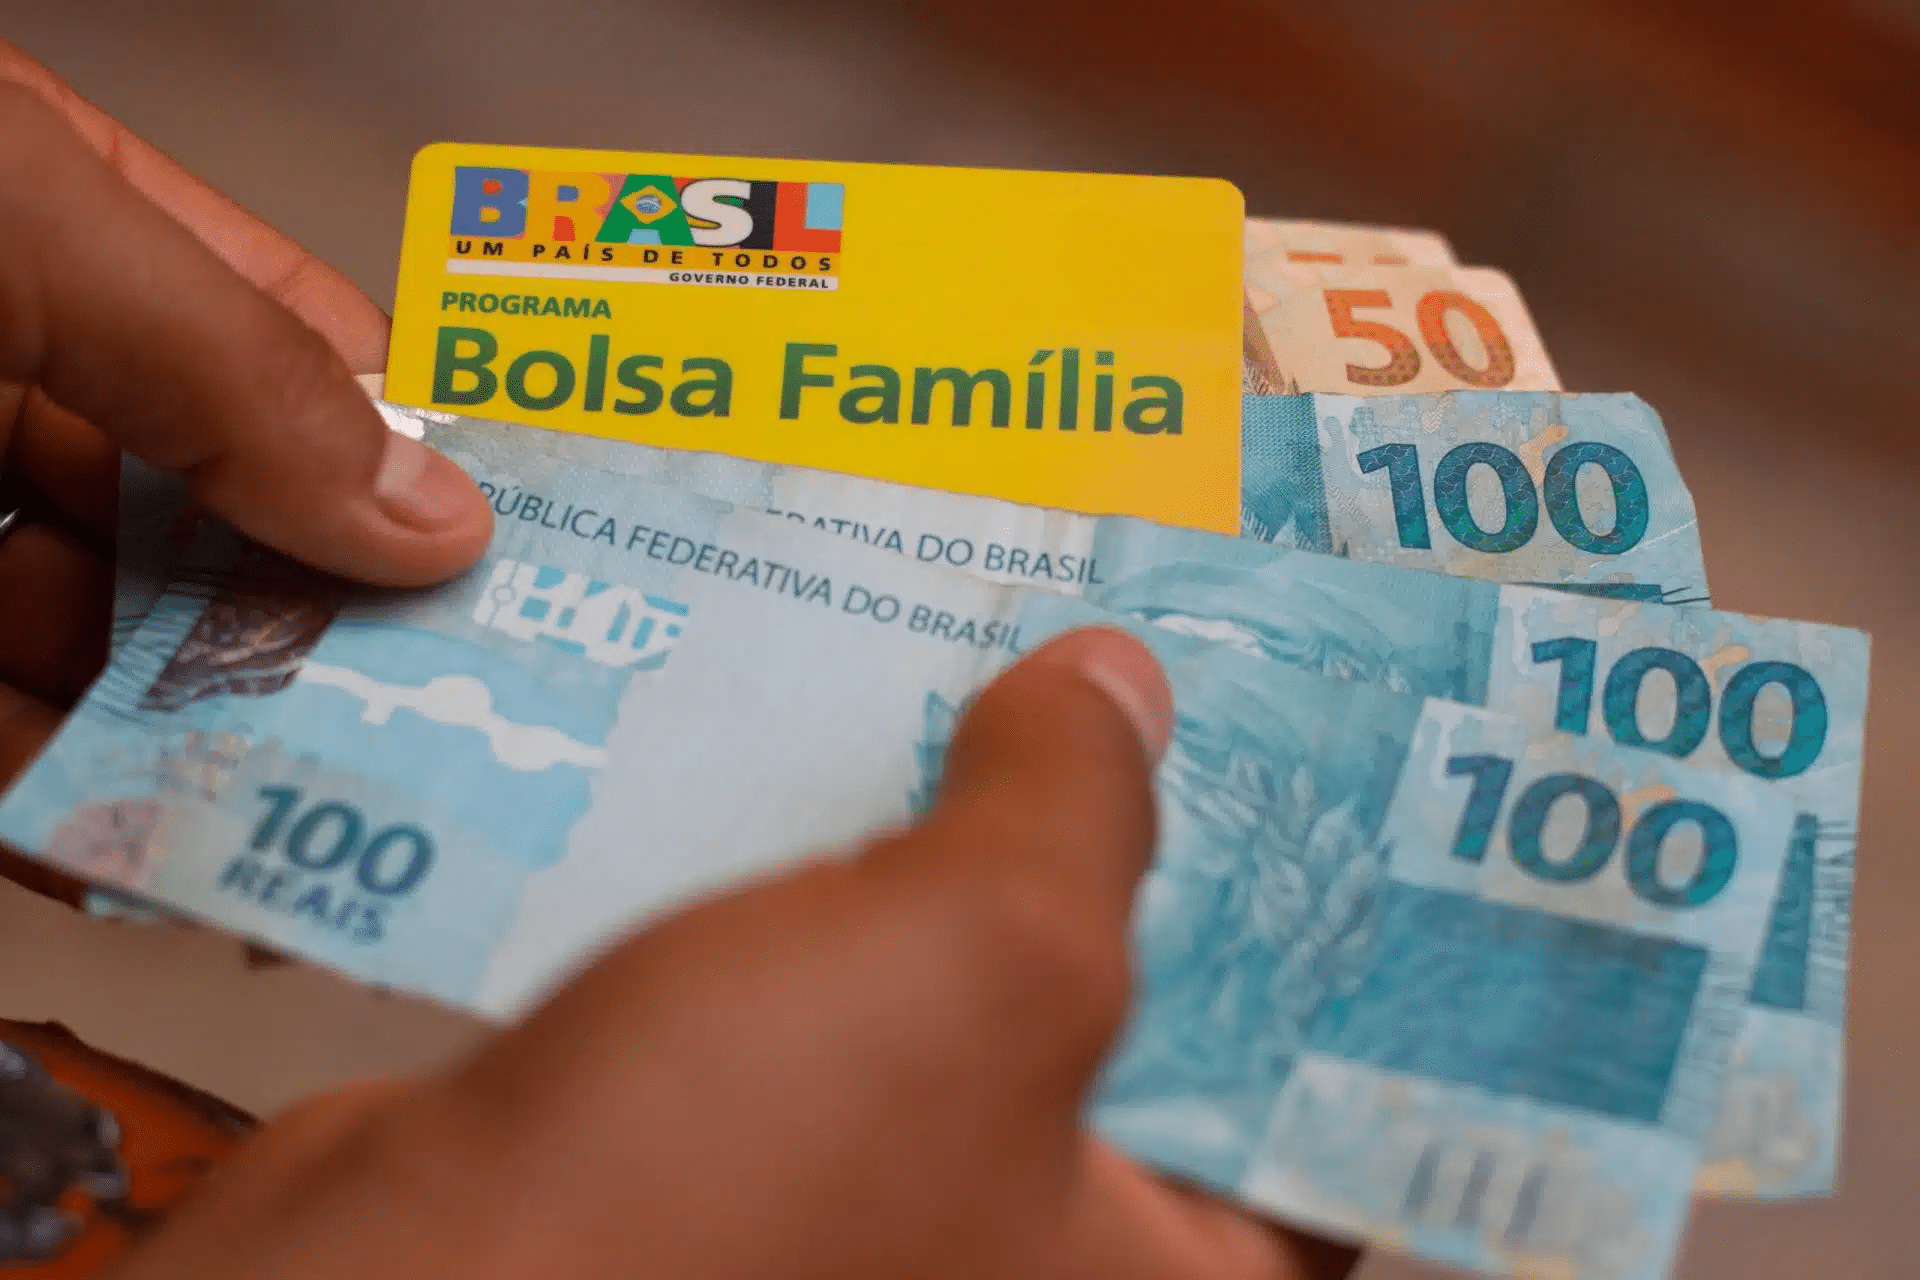 Foto mostra pessoa segurando cartão do Bolsa Família e diversas notas de R$ 50 e R$ 100.